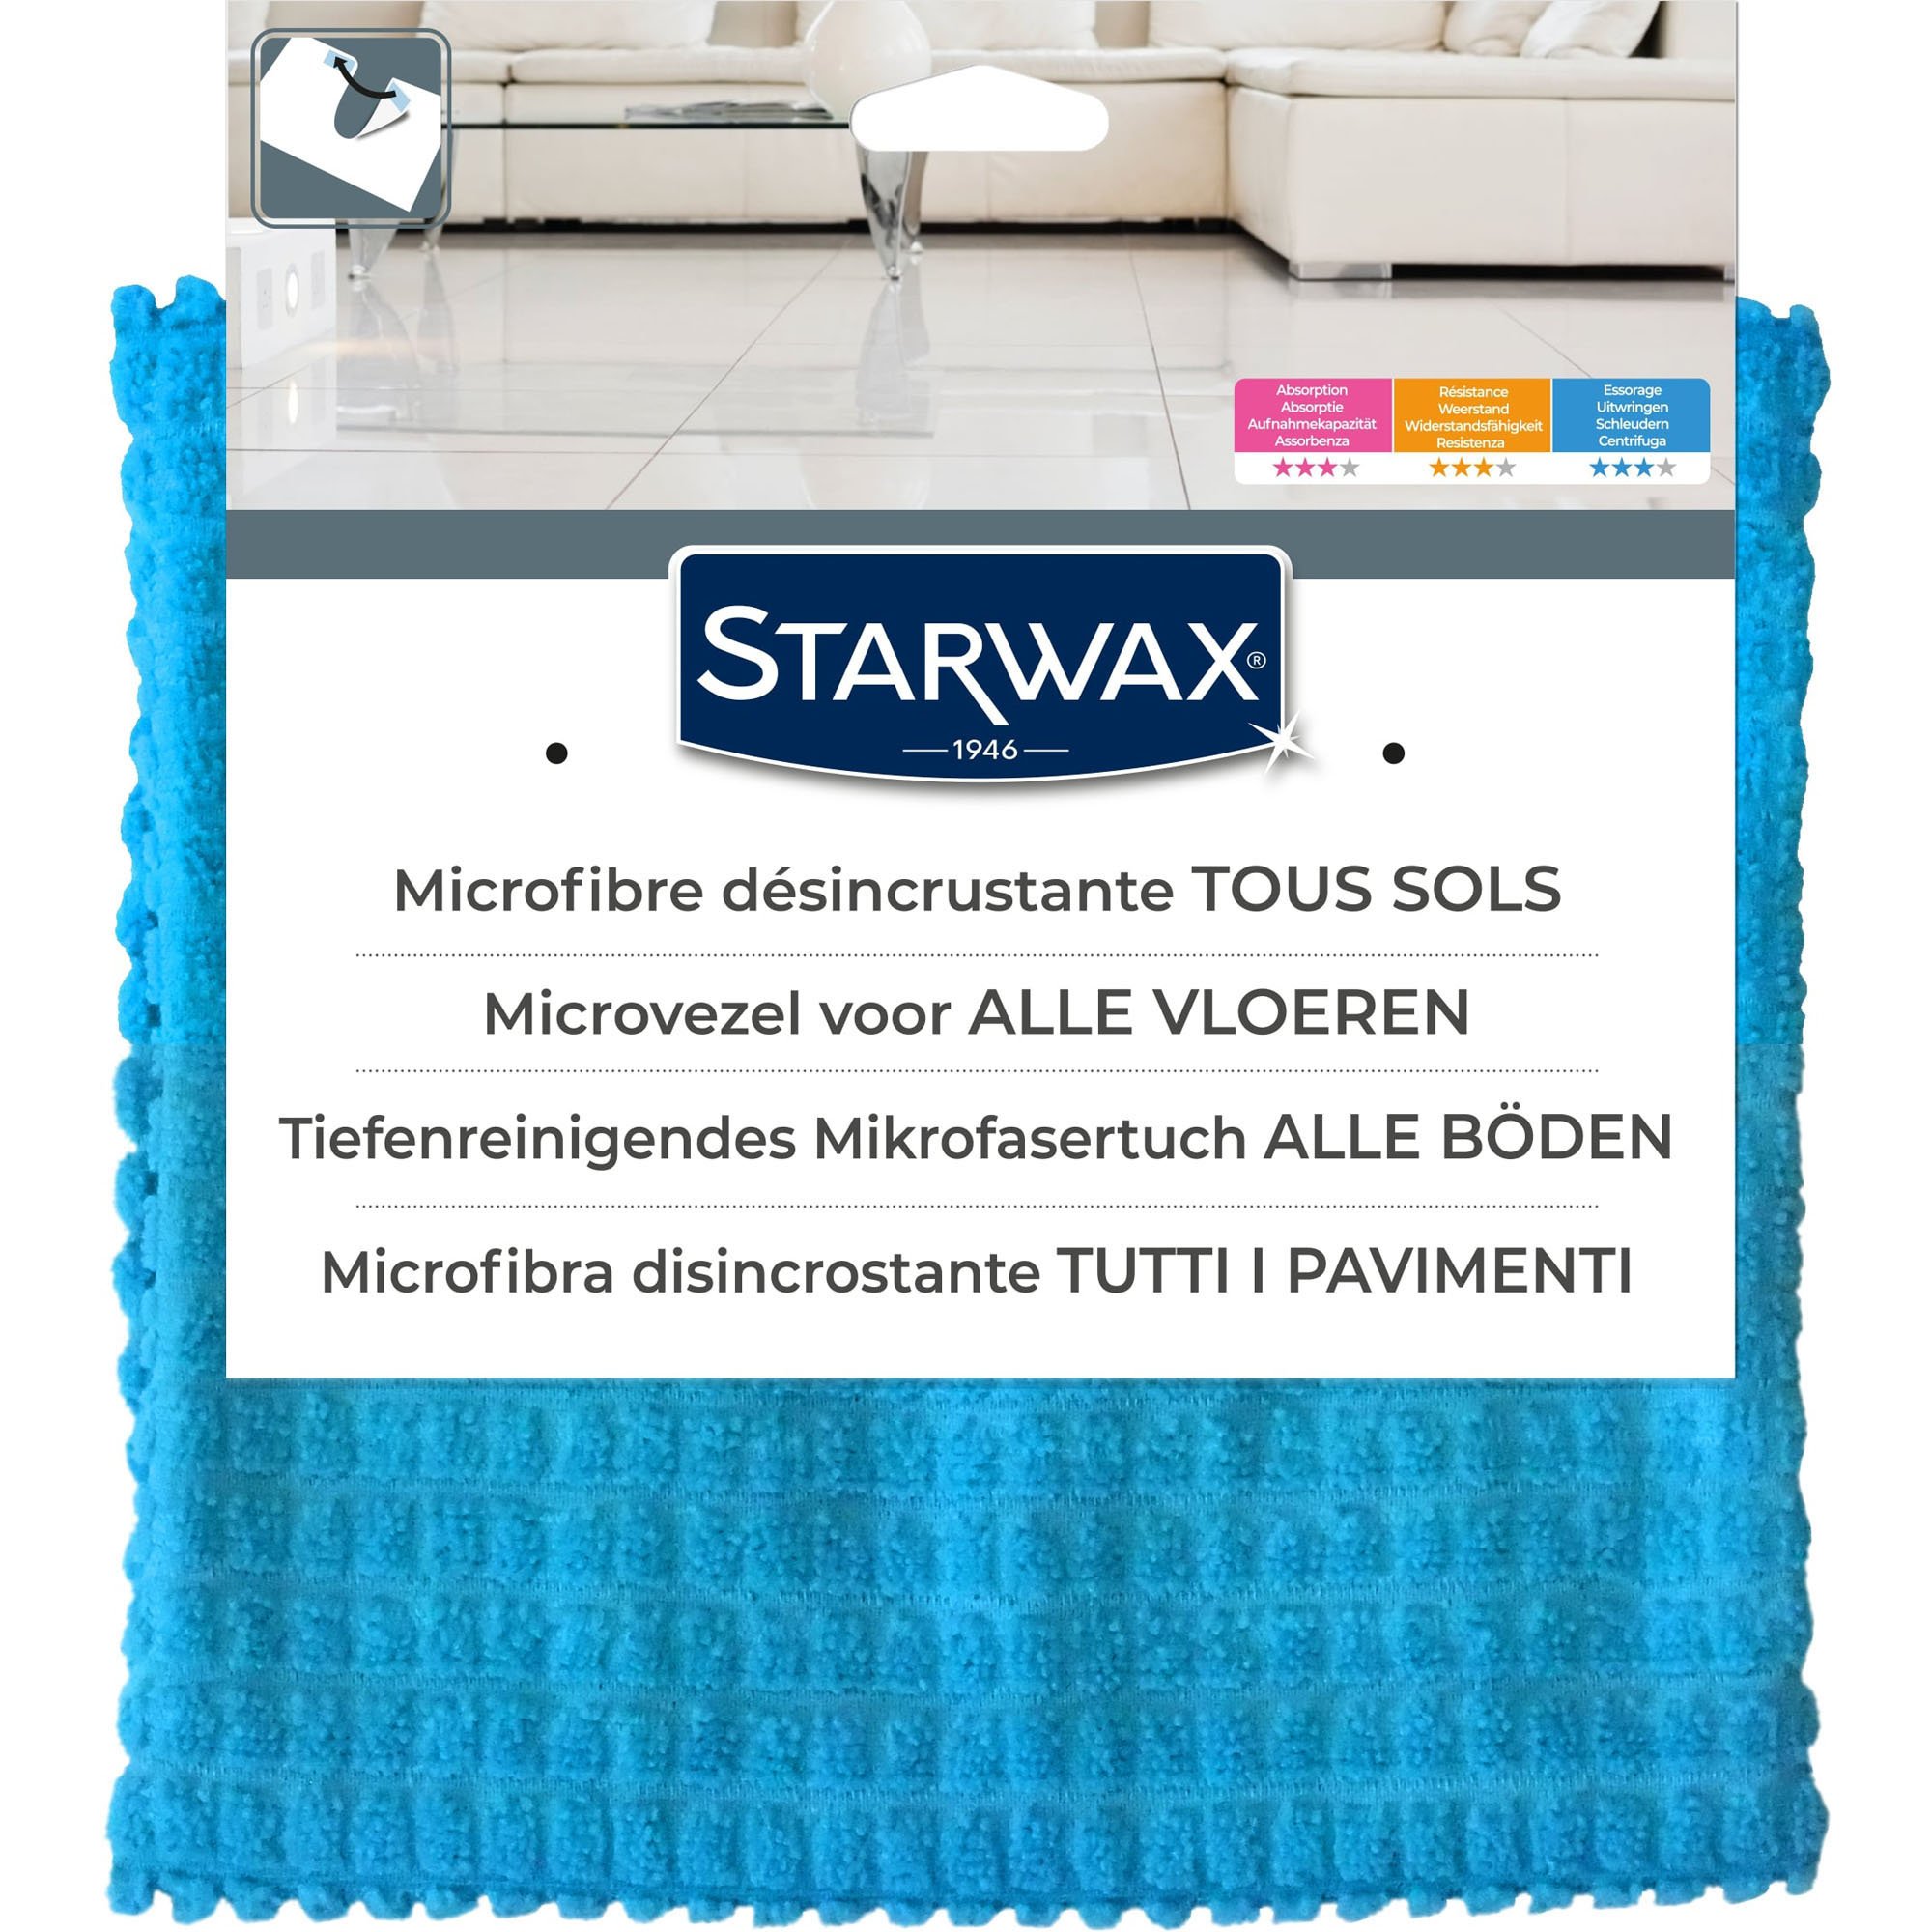 Accessoire de nettoyage Microfibre vitres et miroirs STARWAX